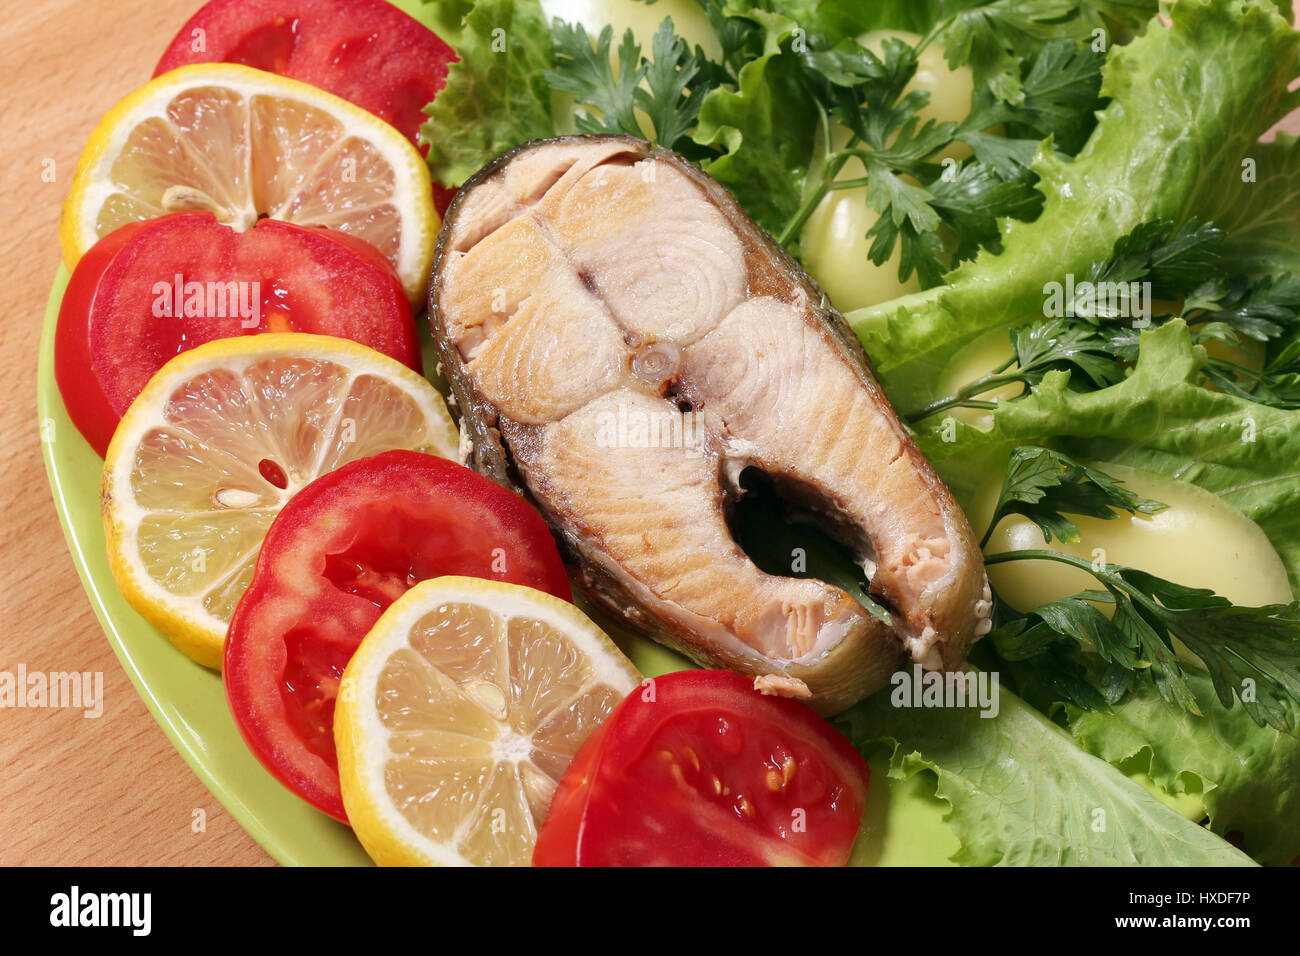 seafood salmon with lemon tomatoes and green salad Stock Photo